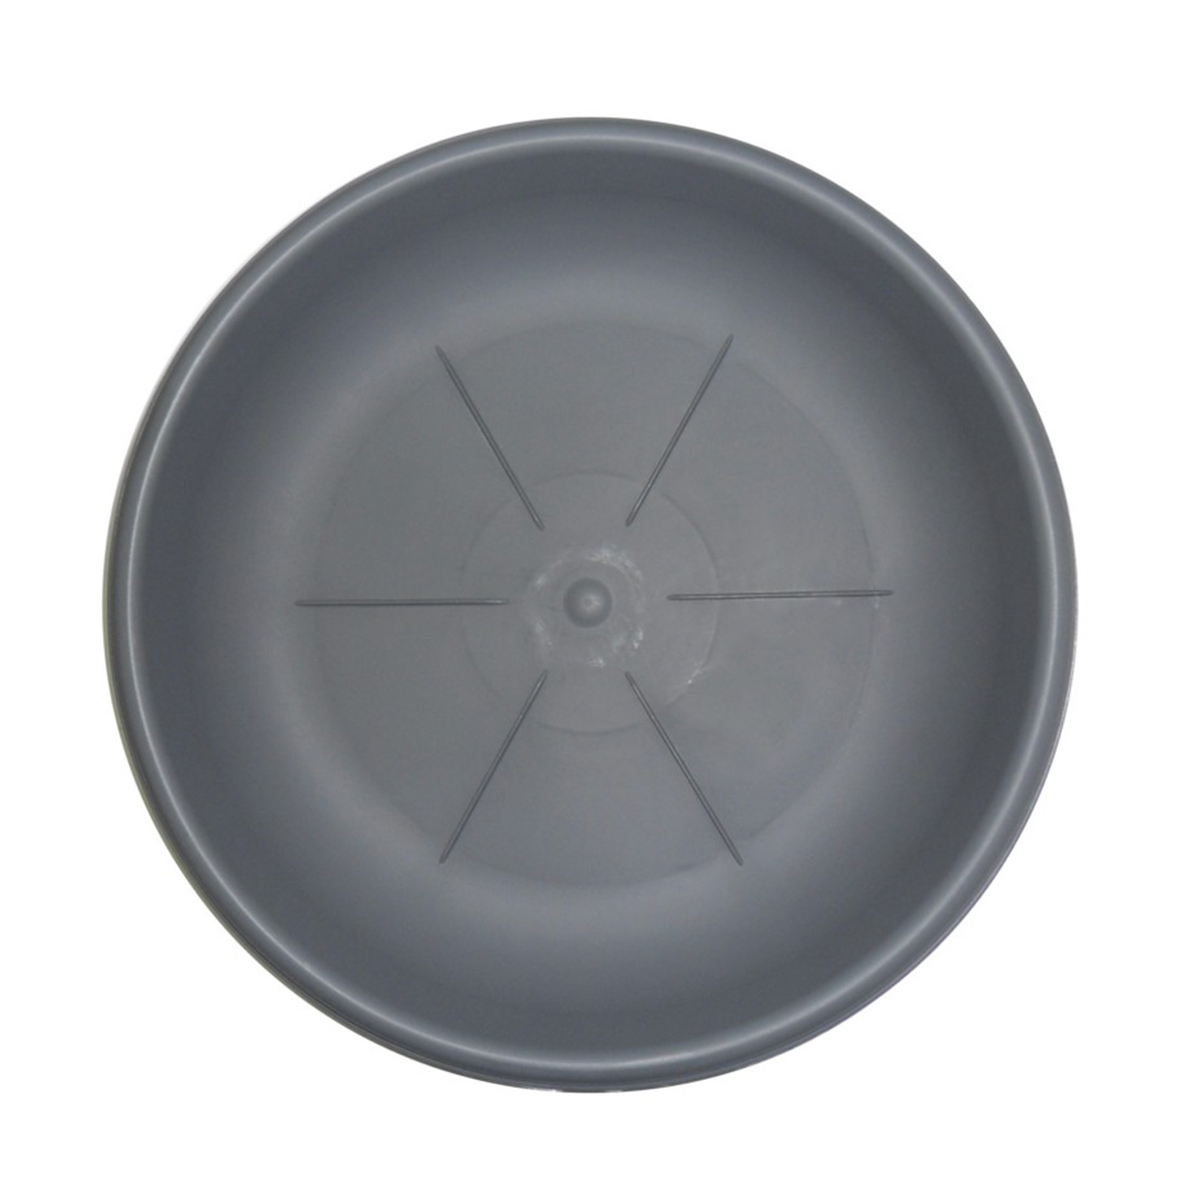 Sottovaso rotondo Bama diametro 22 cm colore grigio